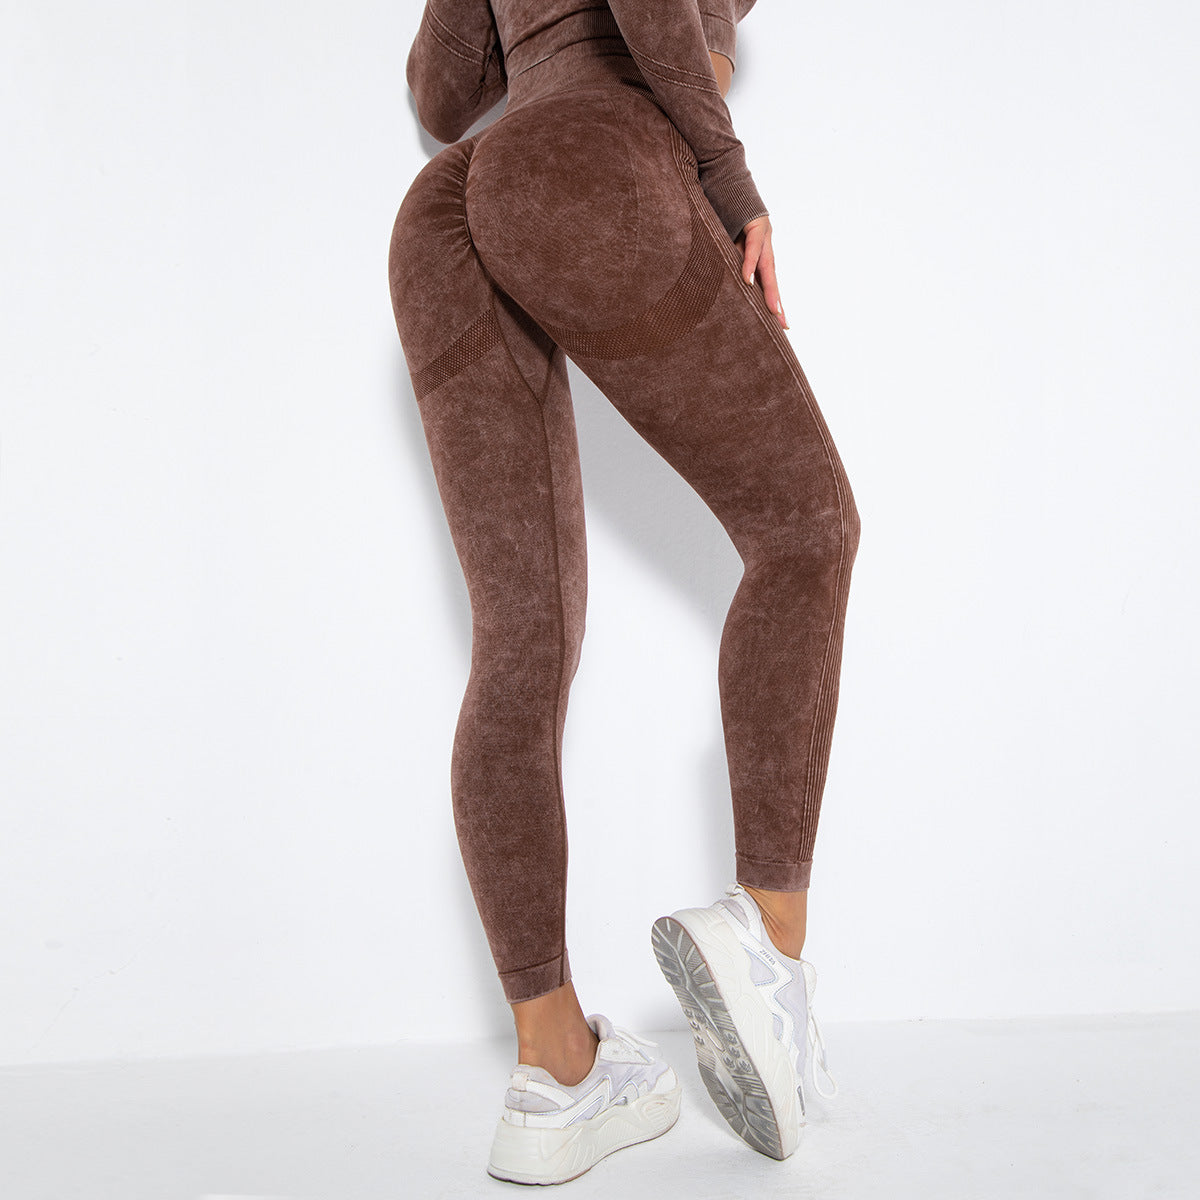 Fashion Sexy Peach Hip Wicking Yoga Pants - Dignitestore Coffee / S Leggings